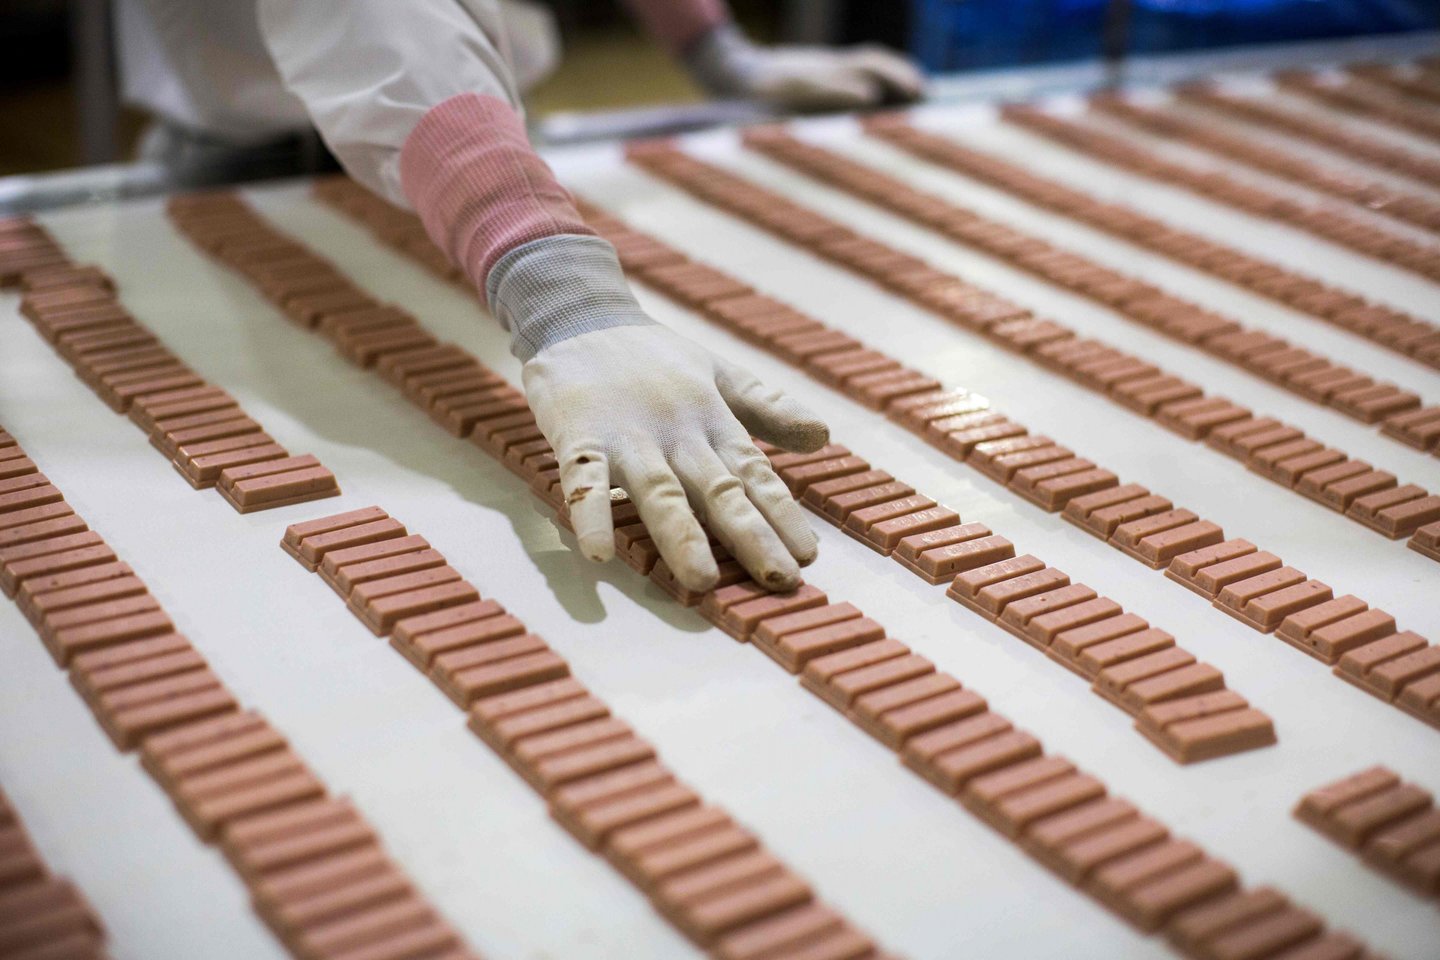 Darbuotojas Japonijoje tikrina braškių skonio „KitKat“ saldumynus.<br>AFP/Scanpix nuotr.